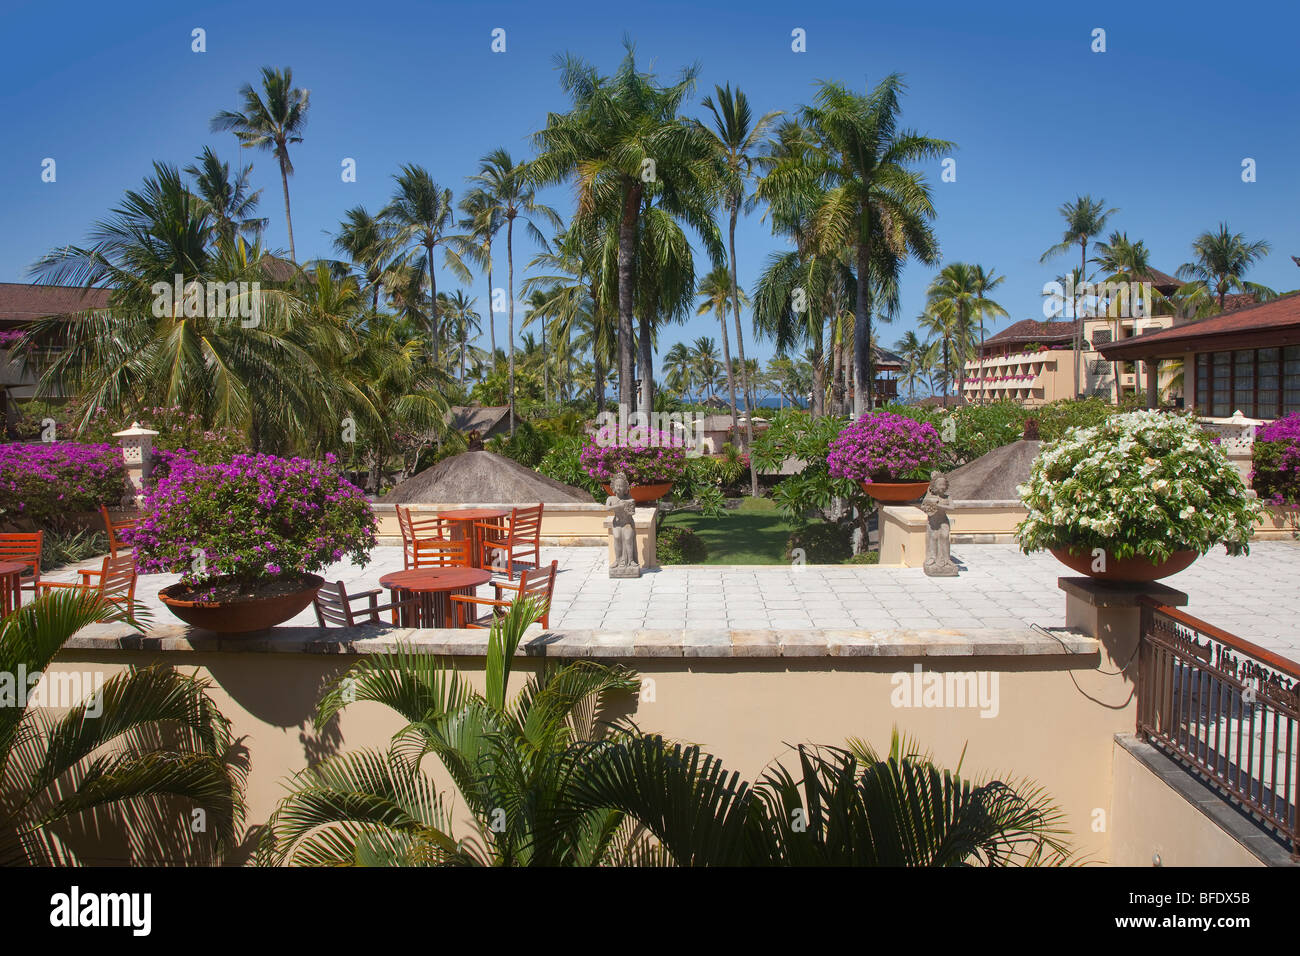 Tropischen asiatischen Hotelanlage mit Palmen, Bali, Indonesien Stockfoto